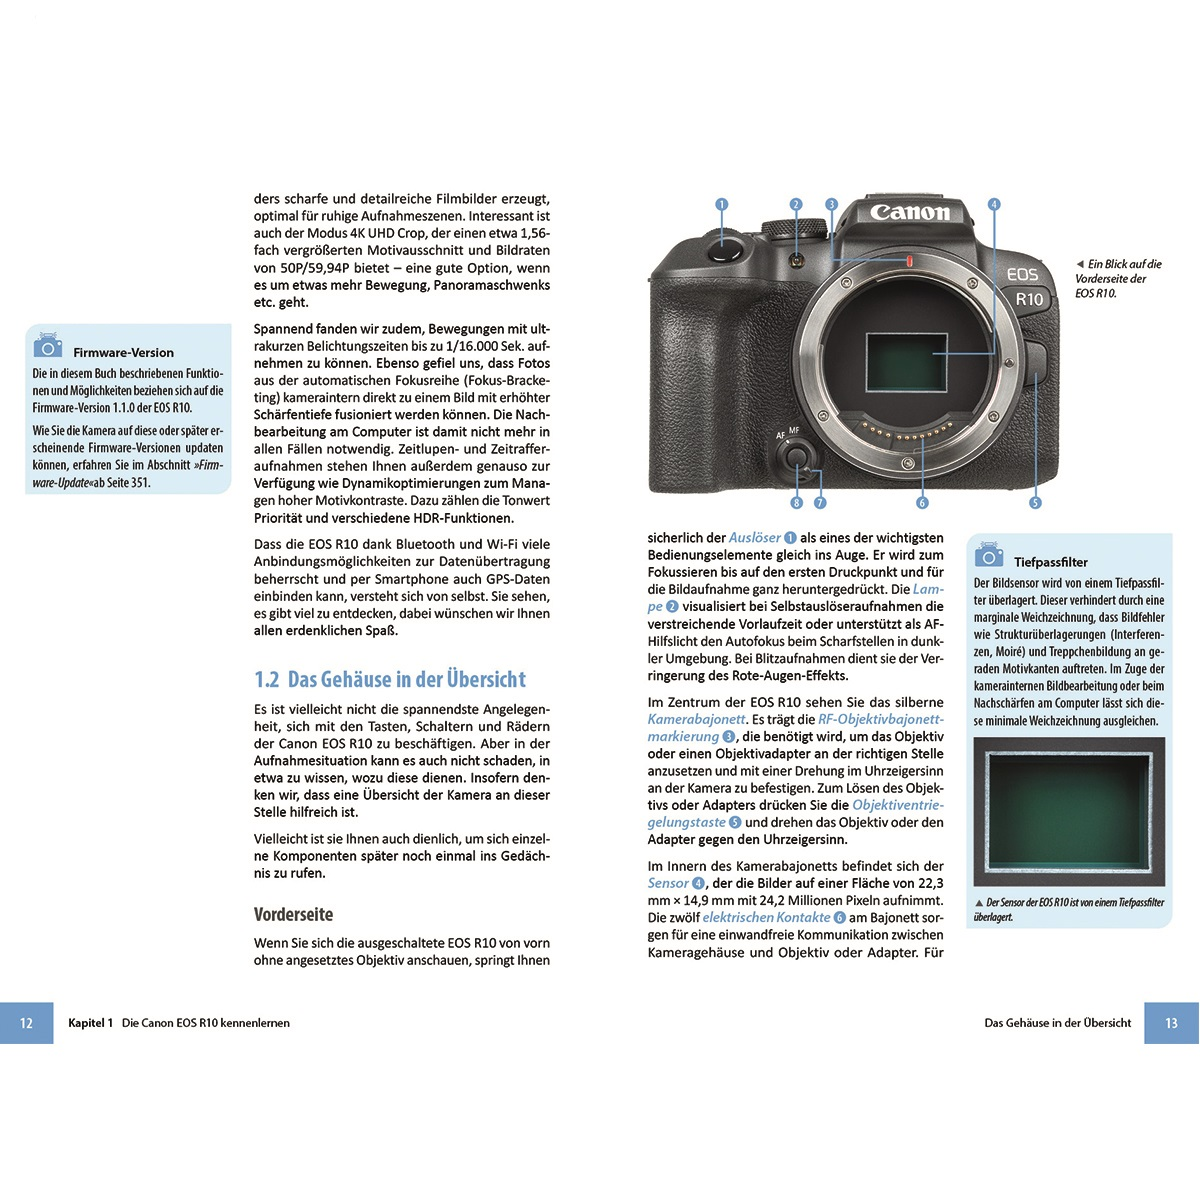 Canon EOS R10 zu - Ihrer umfangreiche Das Kamera Praxisbuch